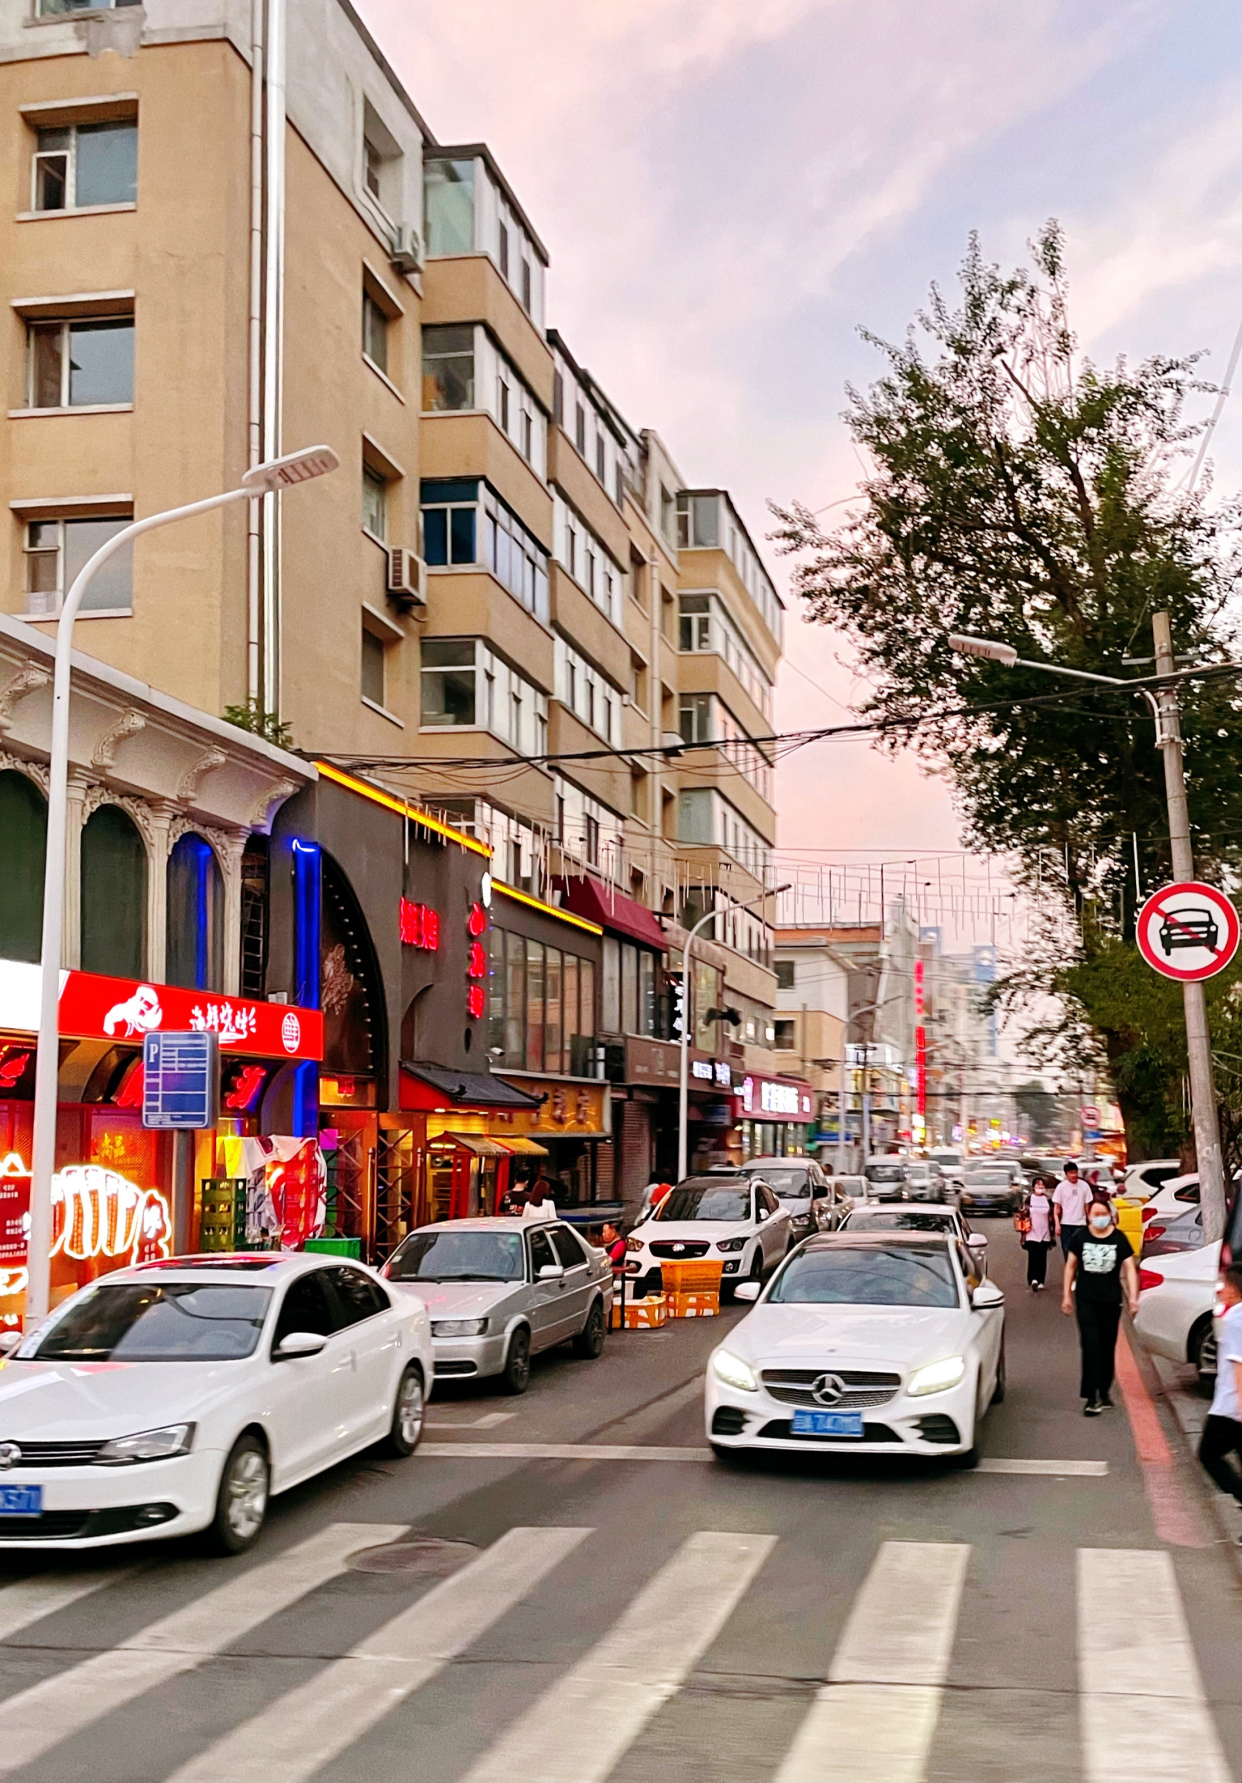 长春这条街以革命烈士命名,如今成了网红街,是最繁华的商业街区